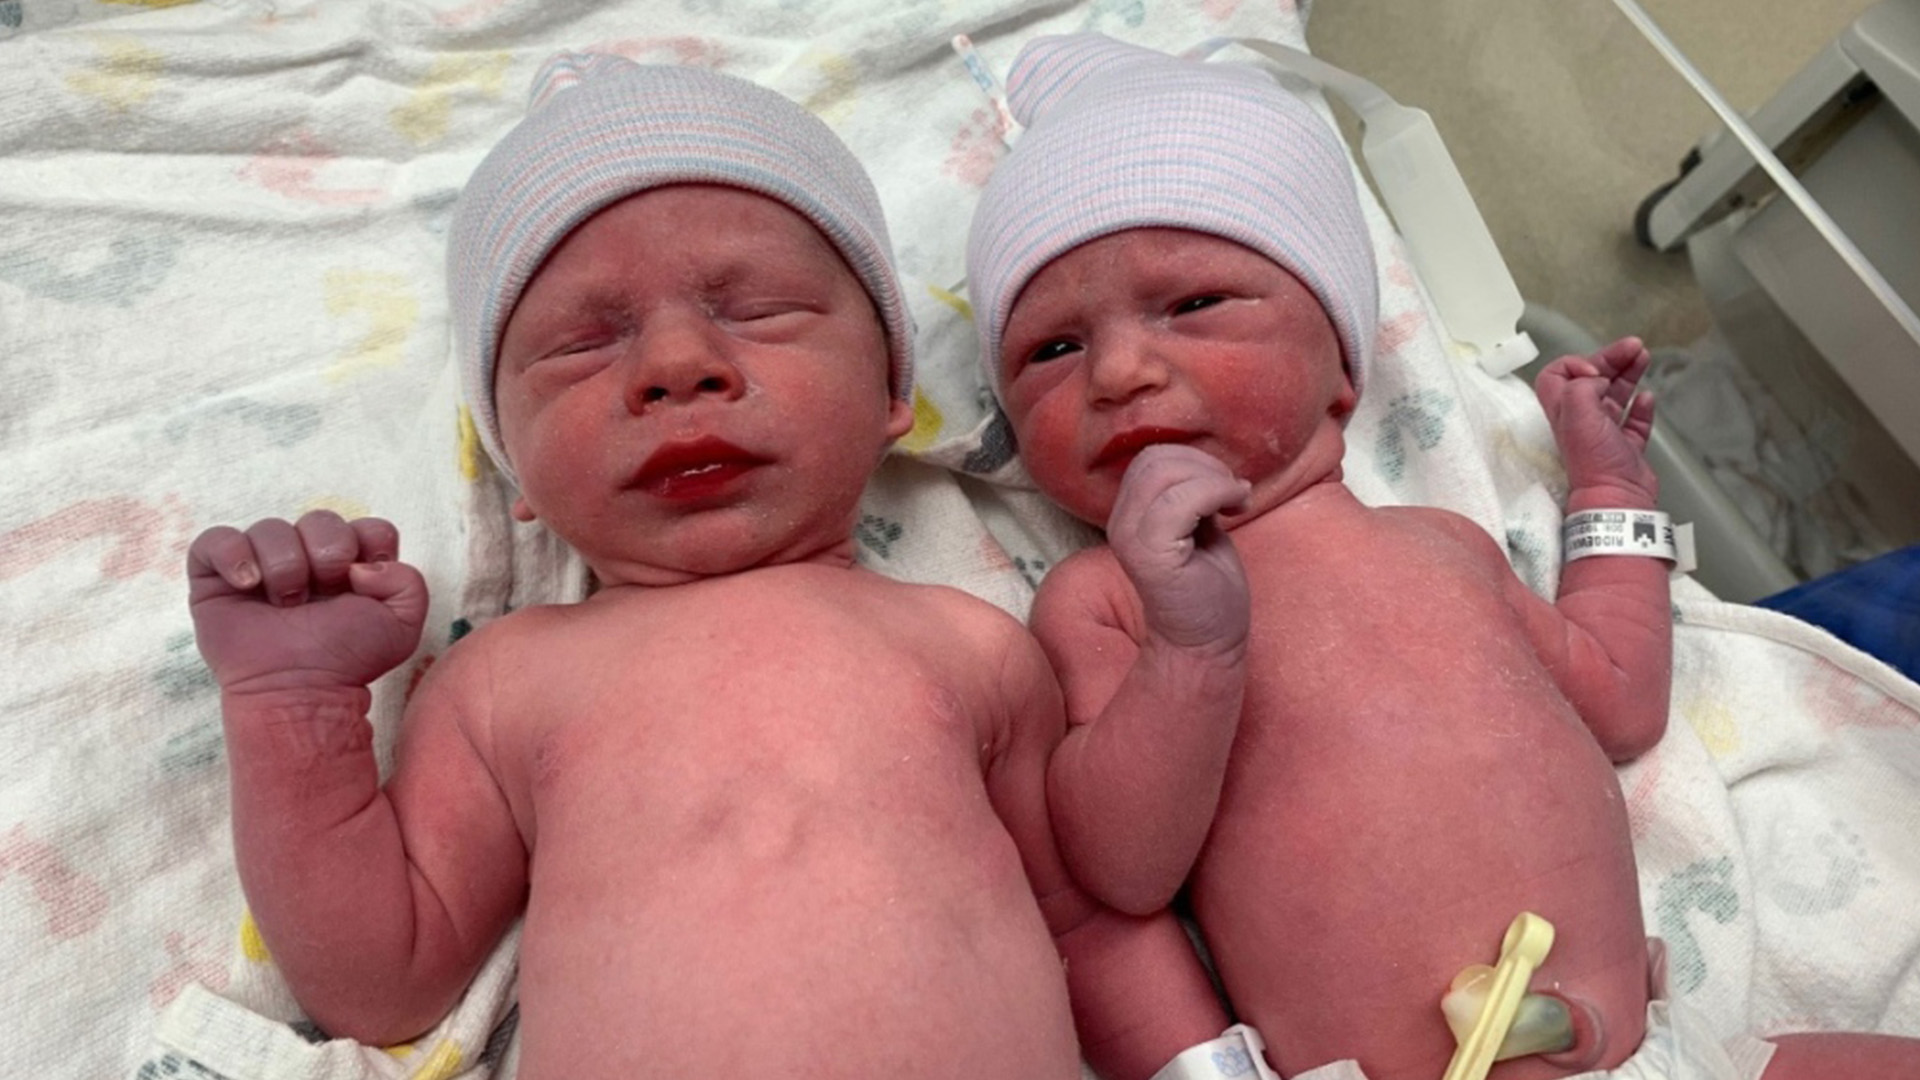 Deux embryons, congelés il y a plus de 30 ans, sont nés le 31 octobre 2022, a rapporté le média CNN lundi.